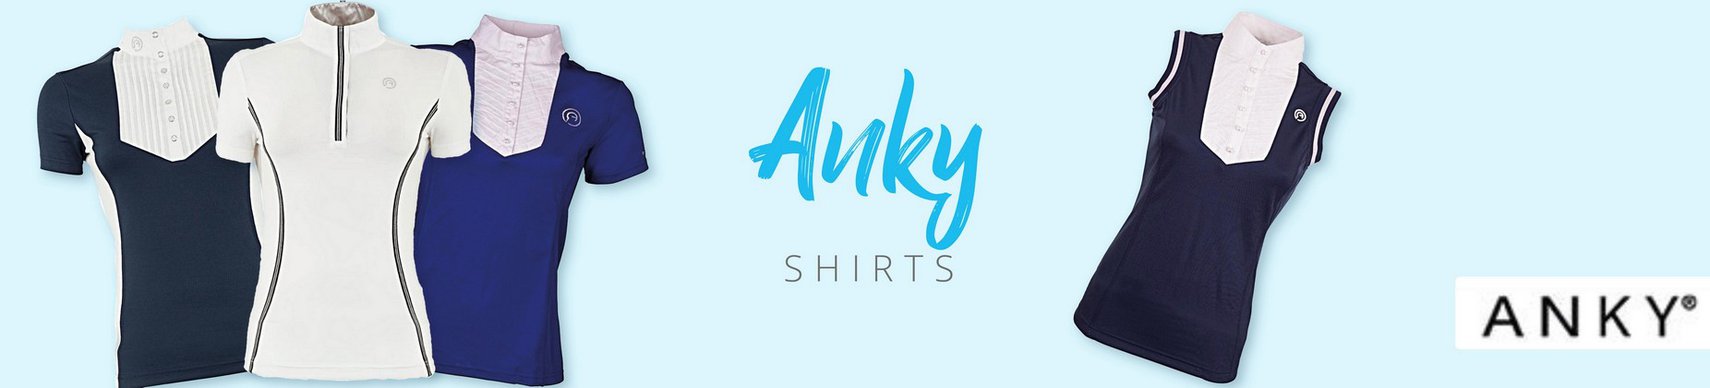 Merk_Anky_Shirts.jpg